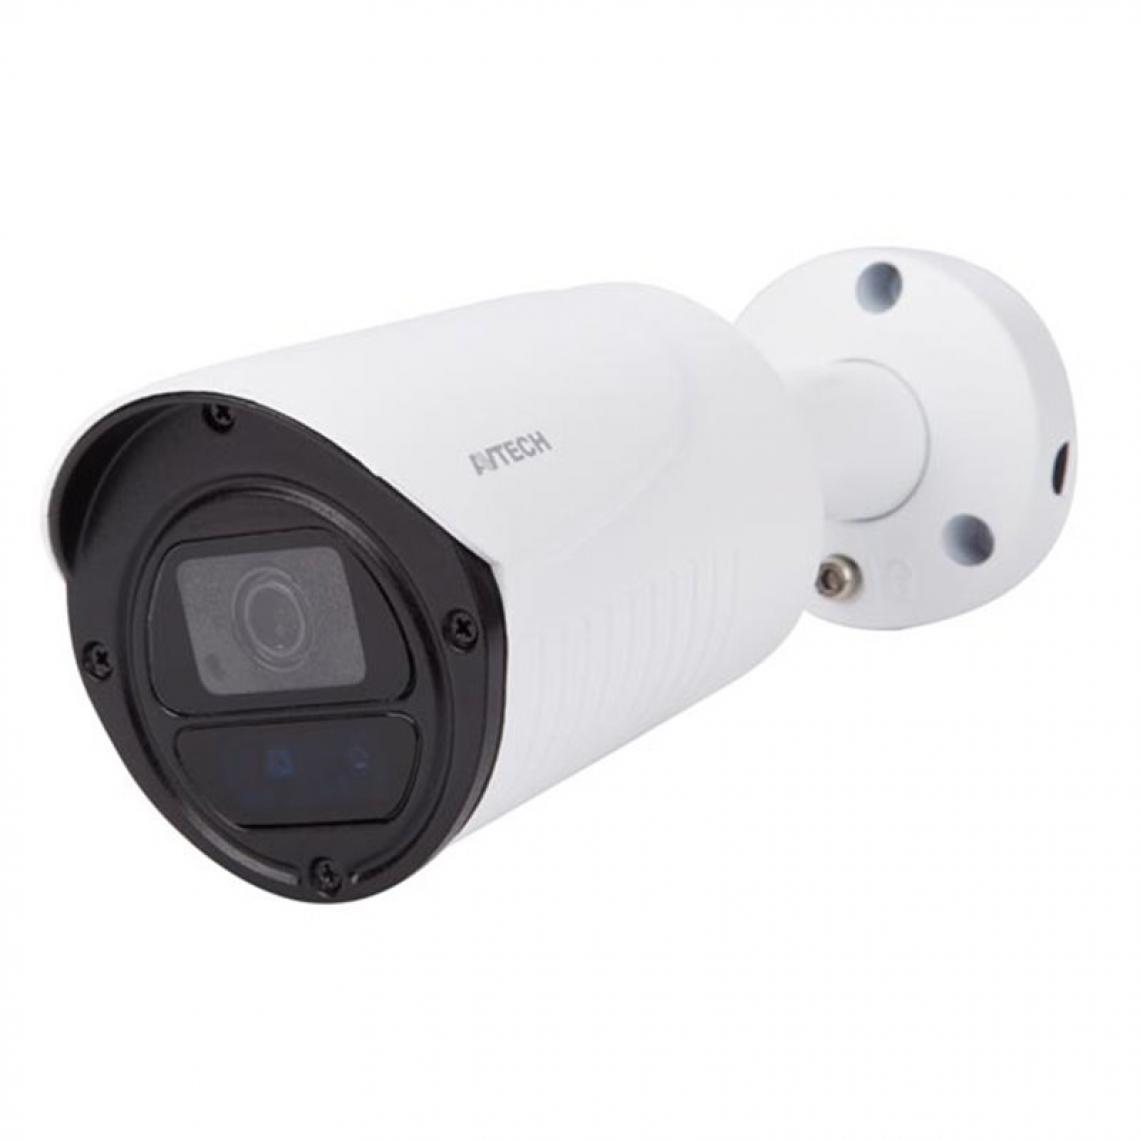 Perel - Caméra Hd Cctv - Hd Tvi - Extérieur - Cylindrique - Ir - 1080P - Caméra de surveillance connectée